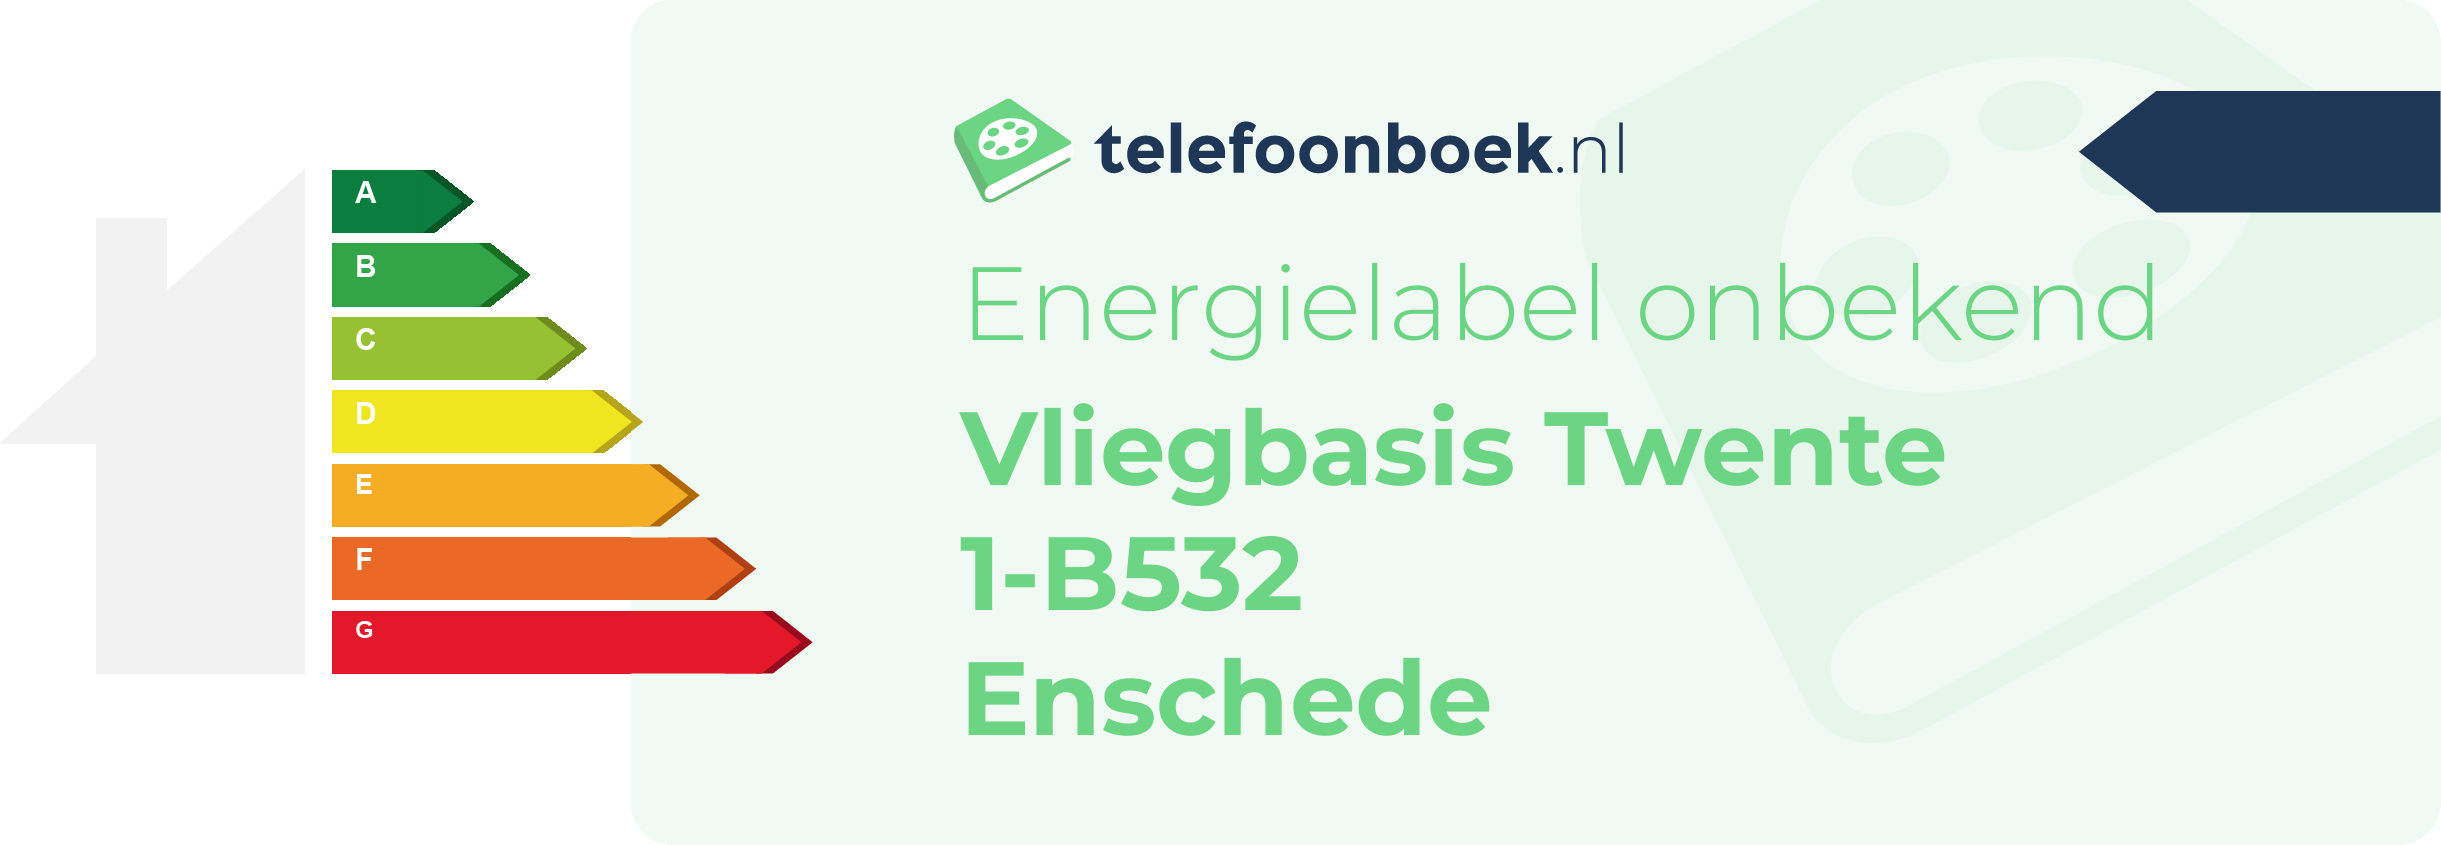 Energielabel Vliegbasis Twente 1-B532 Enschede